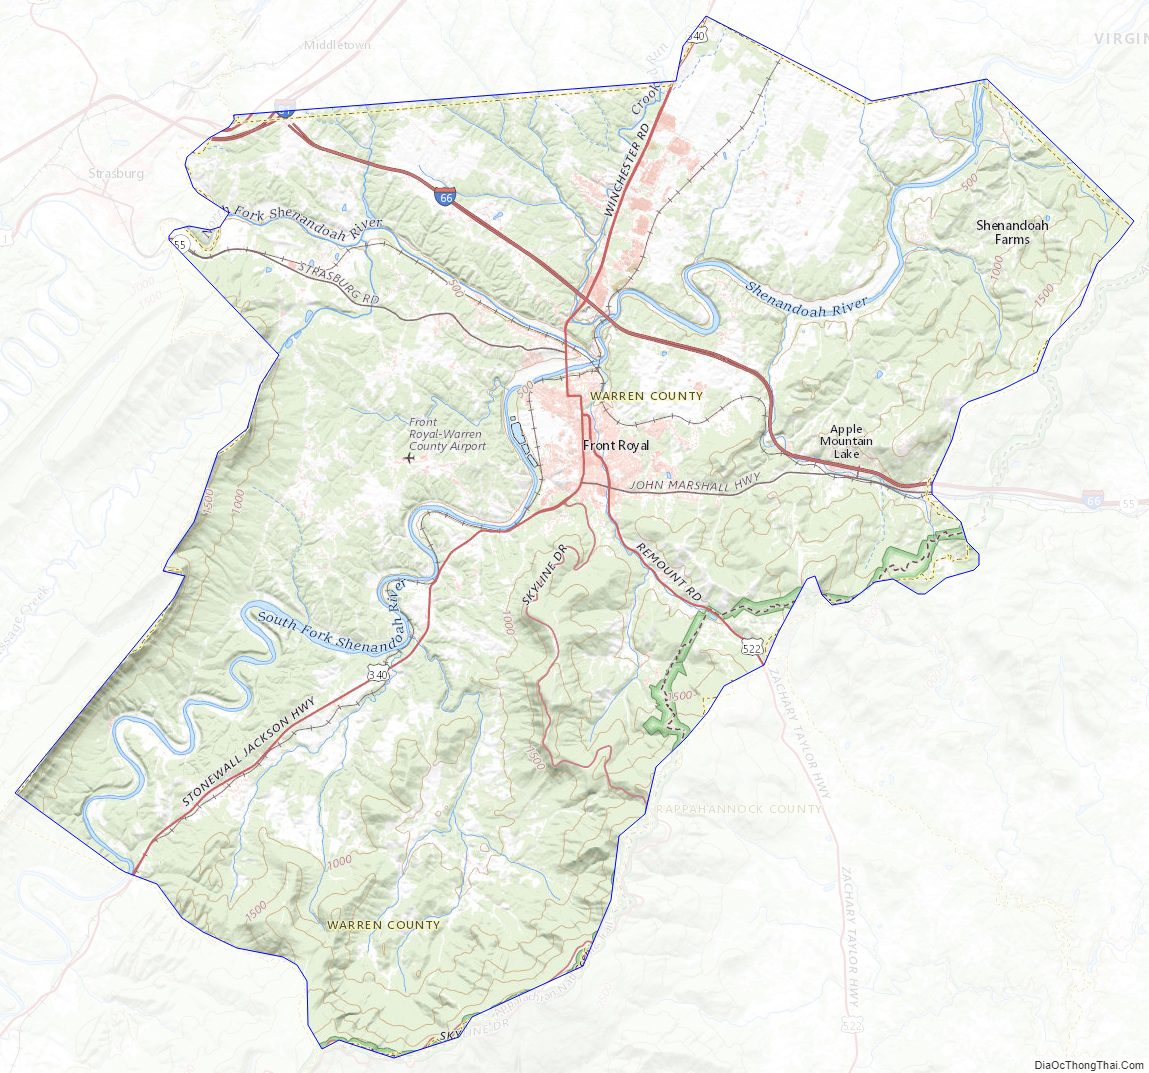 Topographic map of Warren County, Virginia